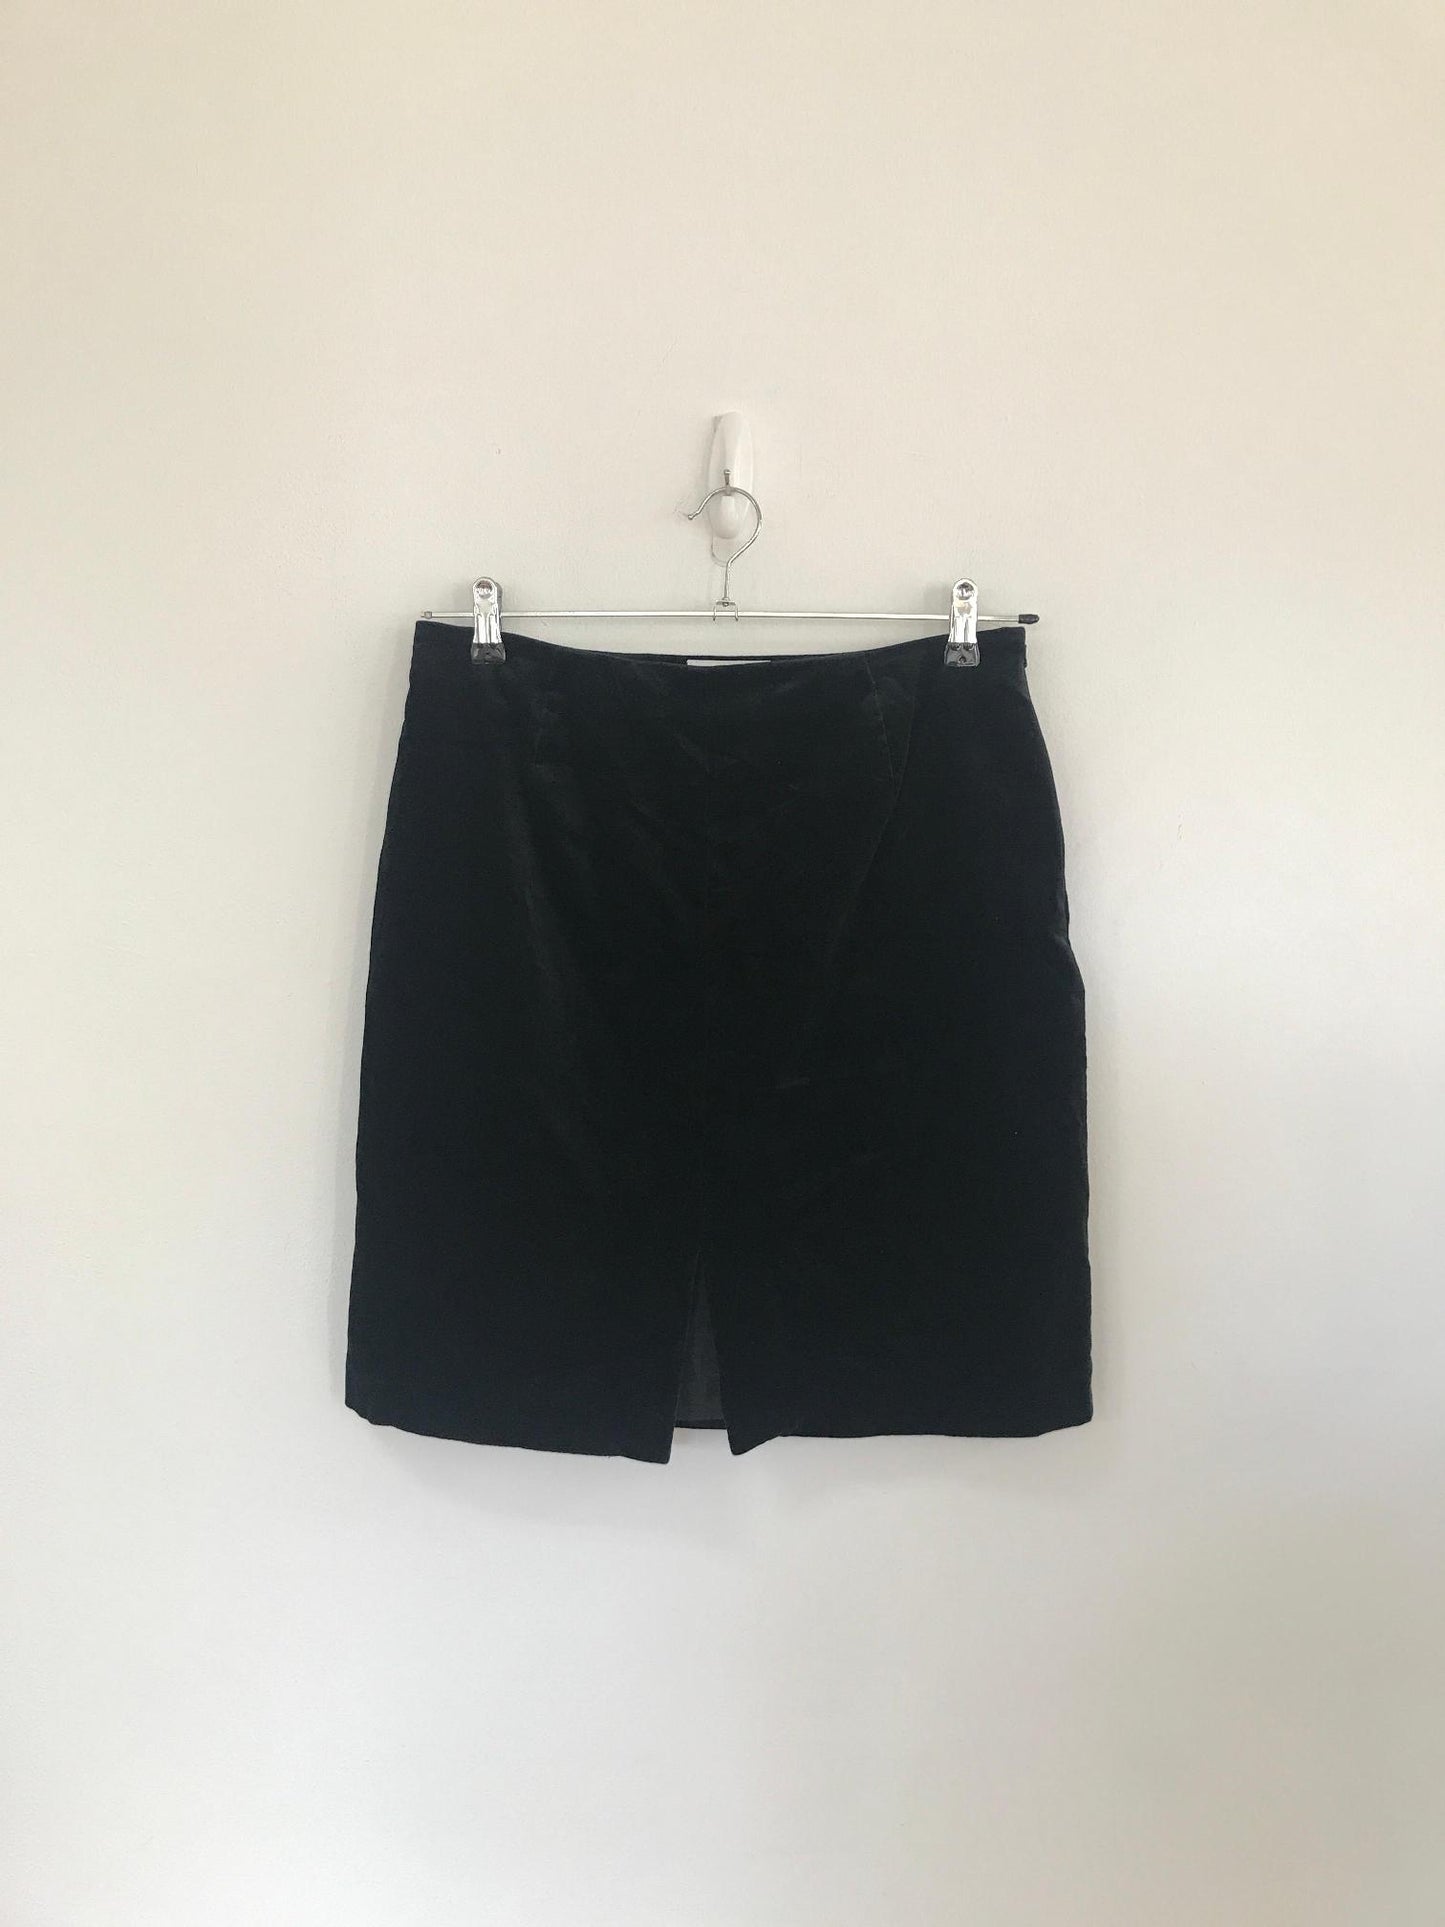 Black velvet a-line knee length skirt, Next, Size 12, 14 (Elastane, Cotton, Polyester)